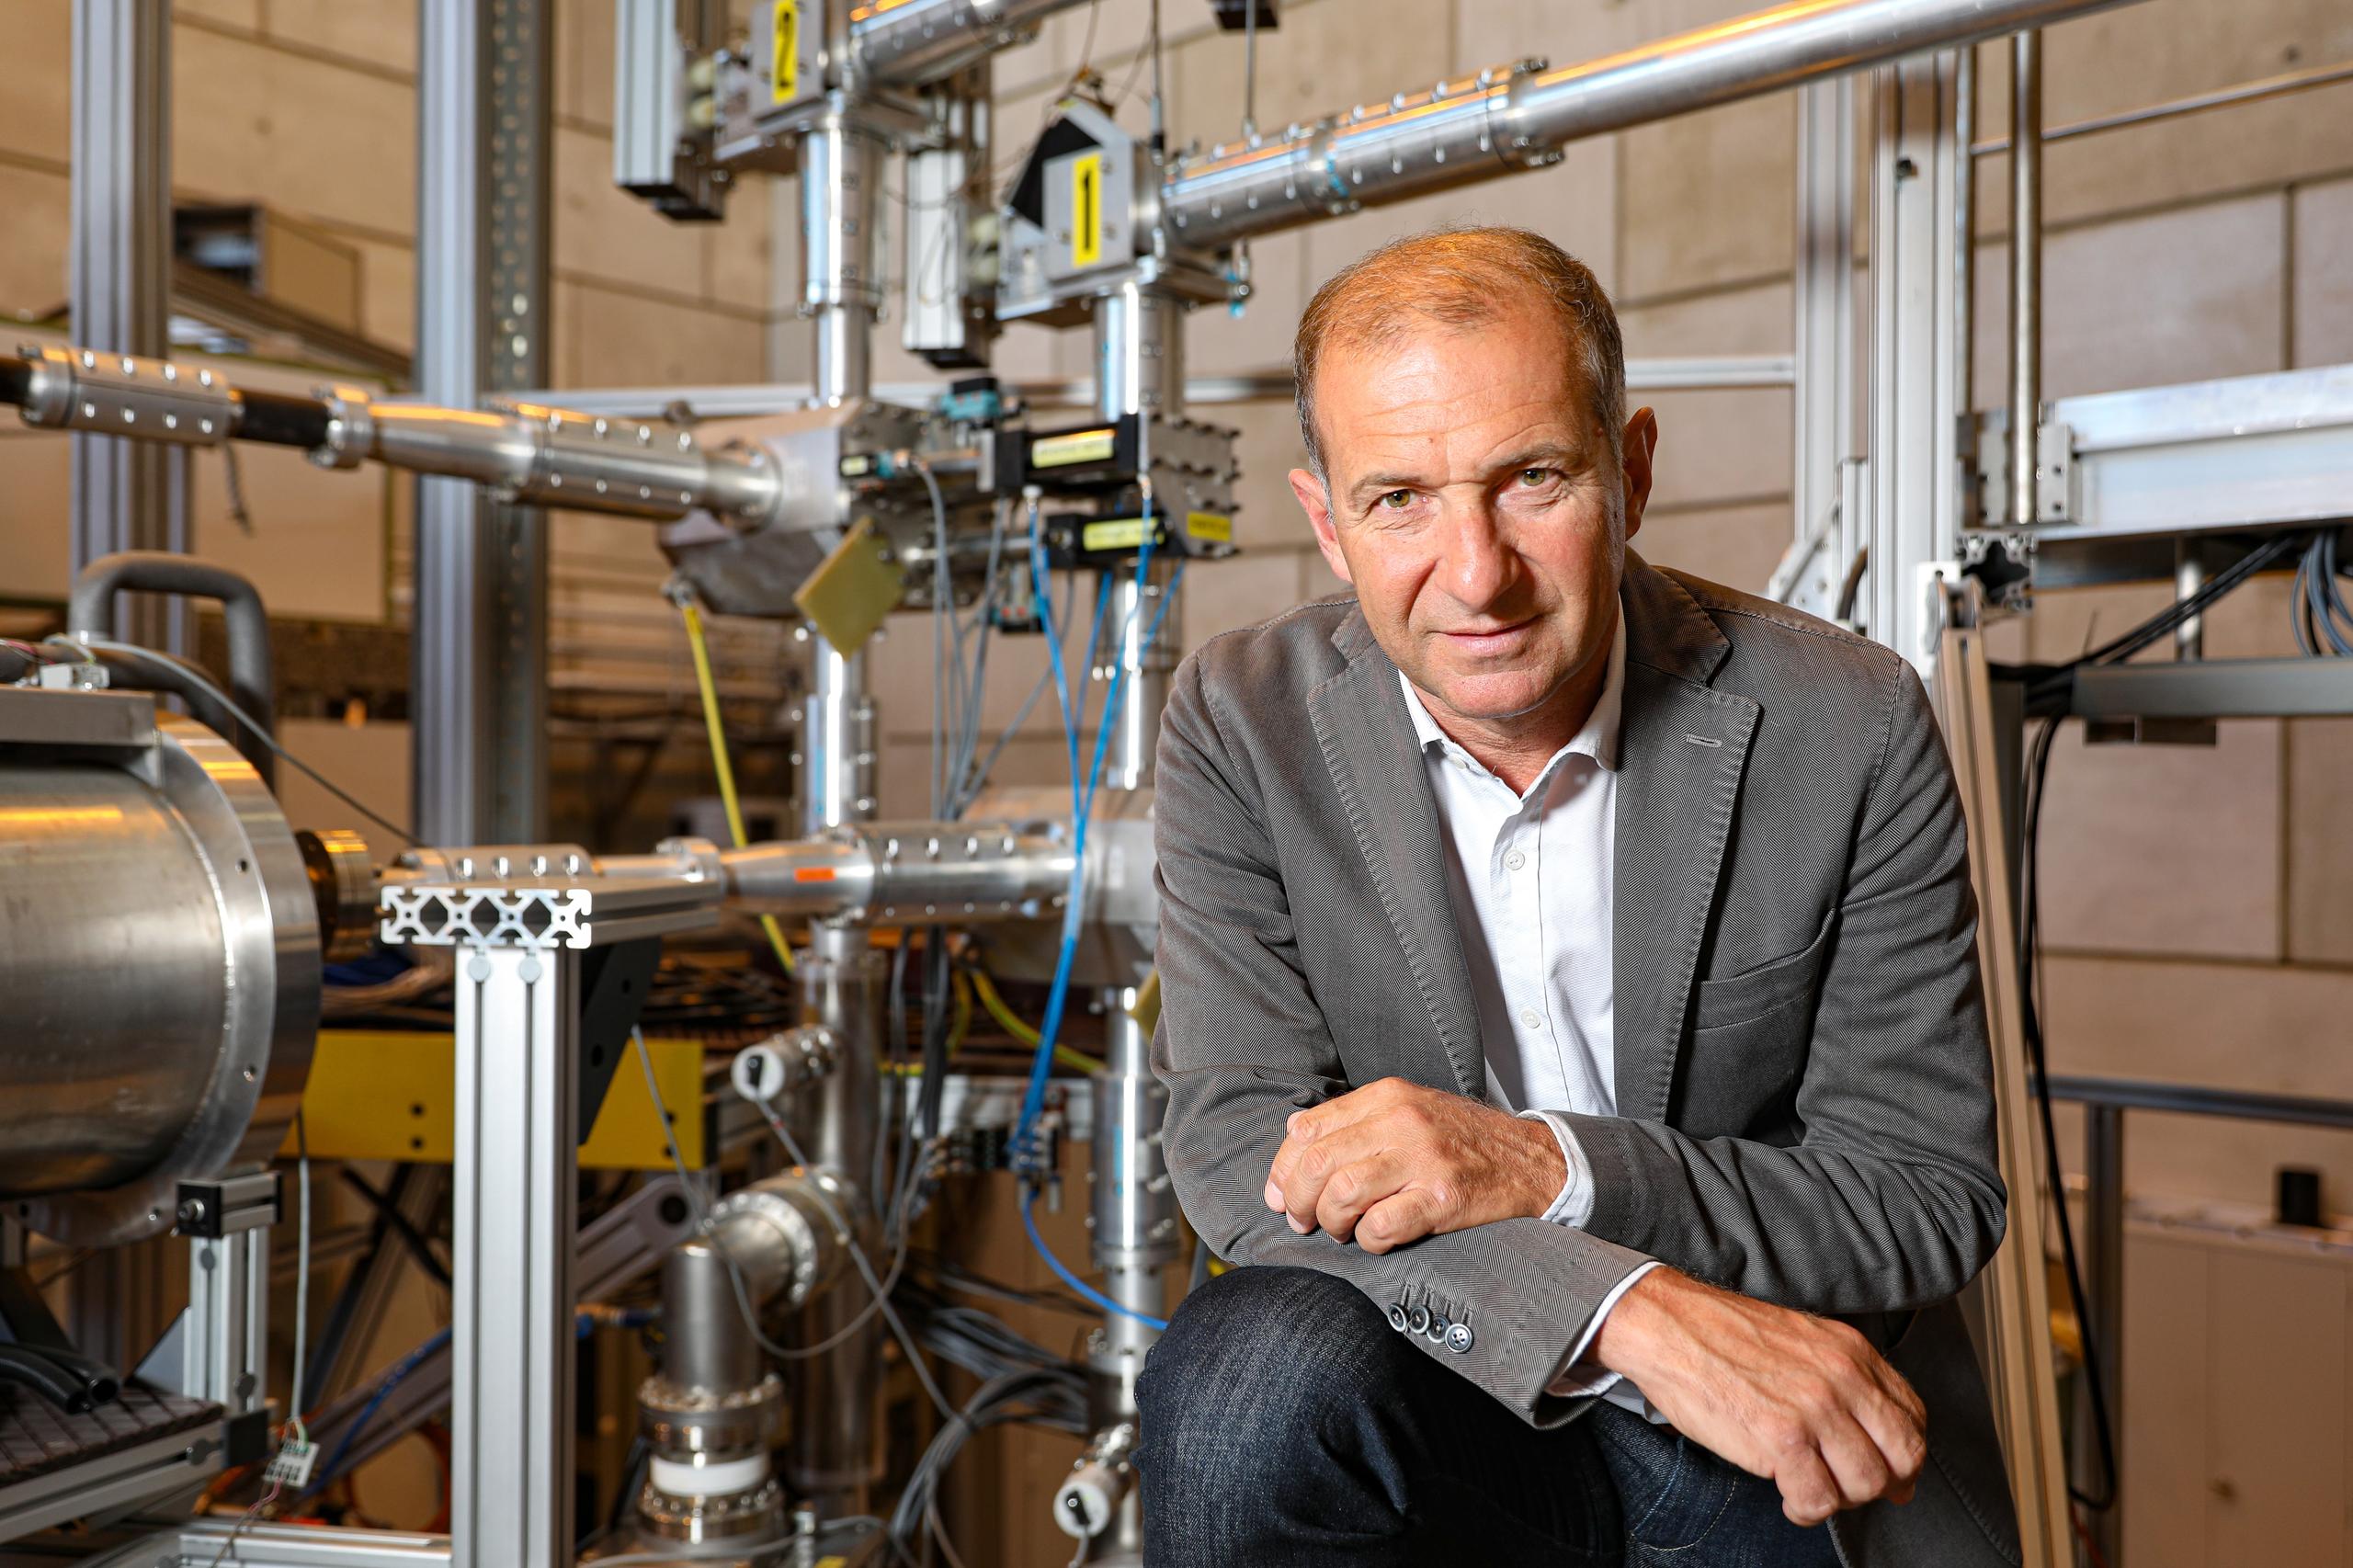 Ambroglio Fasoli, director of the Swiss Plasma Center at EPFL